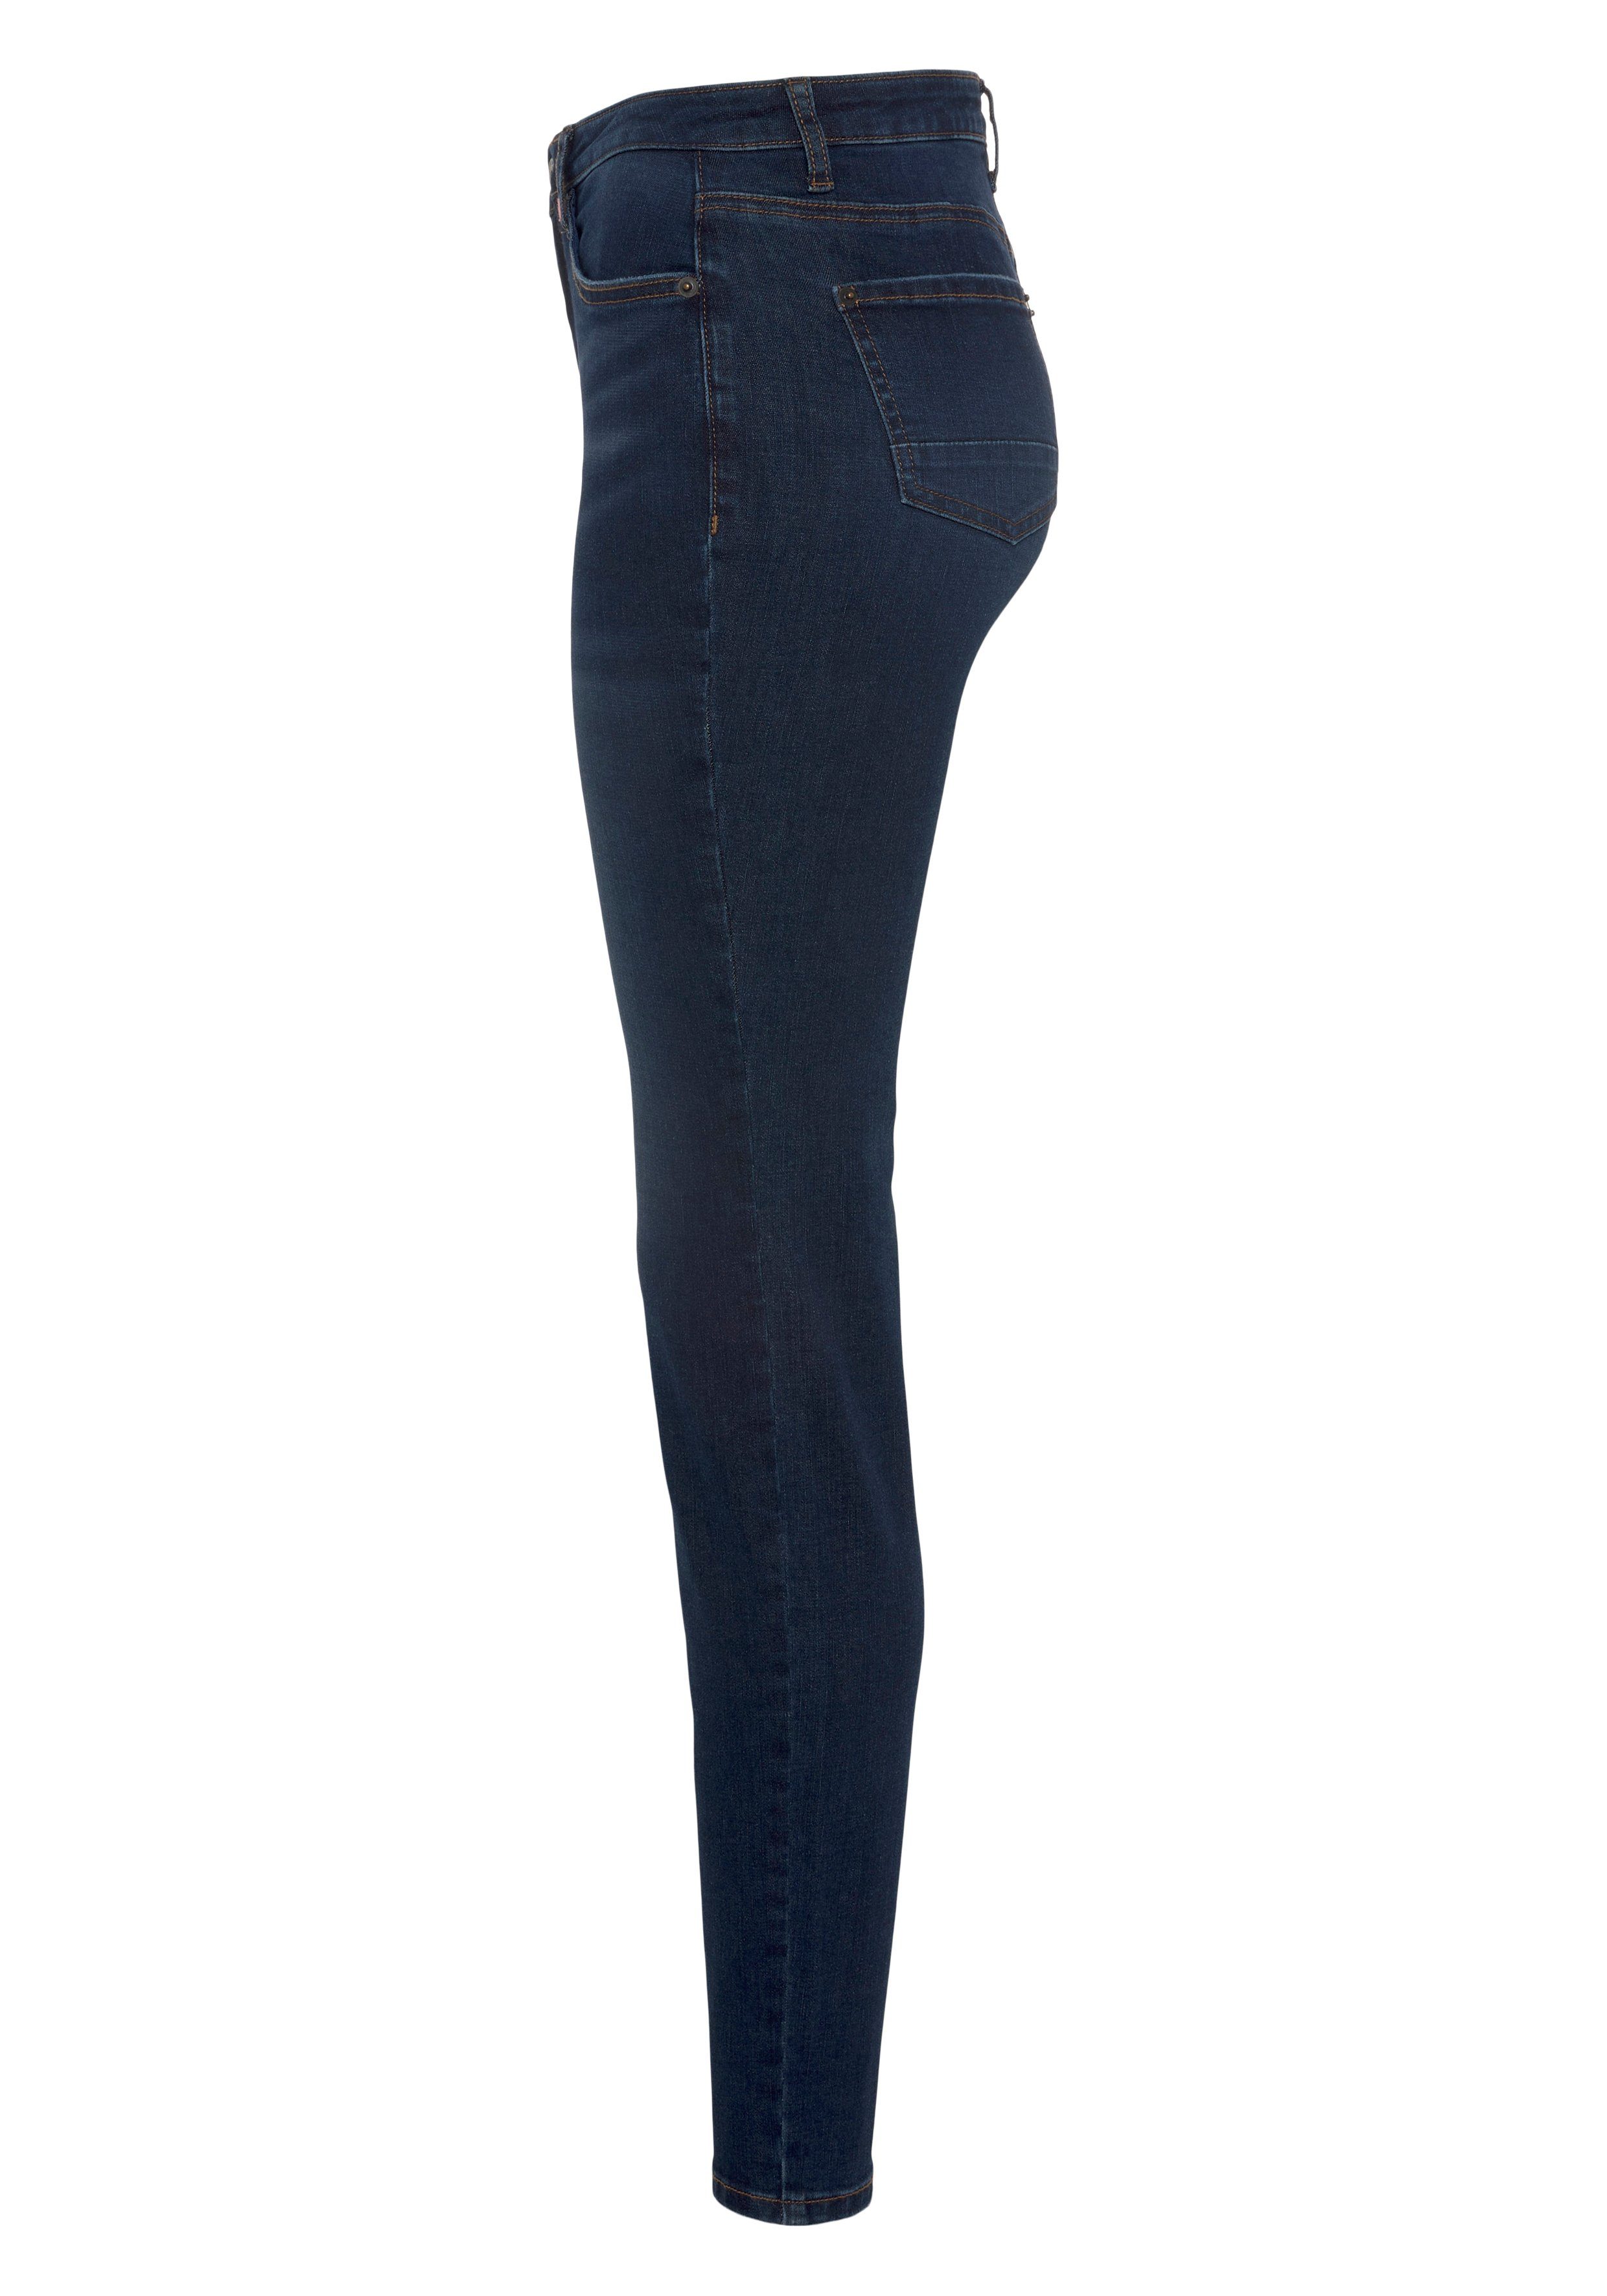 Alife & Kickin NEUE used used dark High-waist-Jeans KOLLEKTION blue NolaAK Slim-Fit